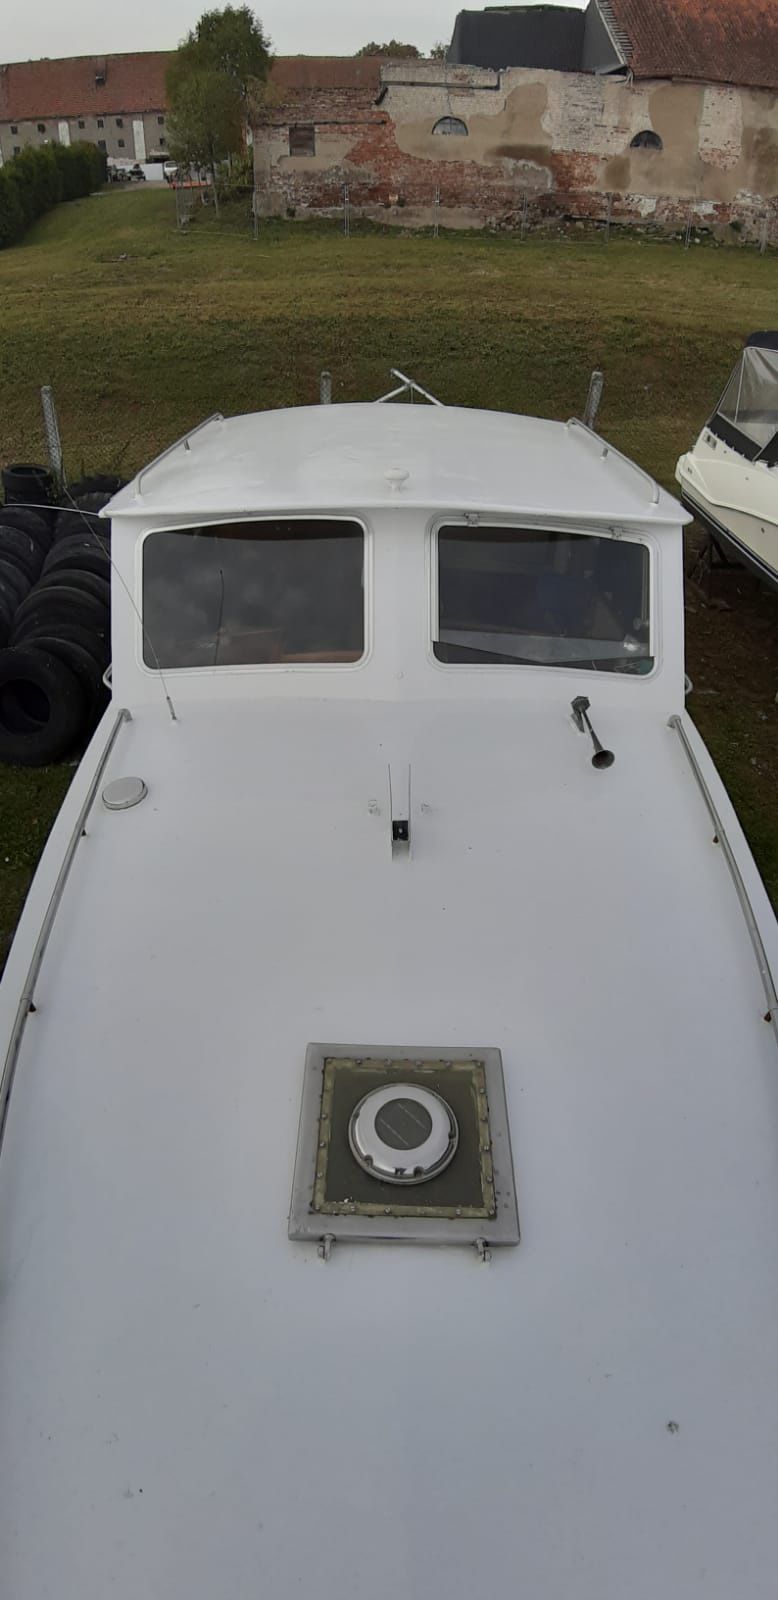 Jacht motorowy diesel Mercedes hauseboat